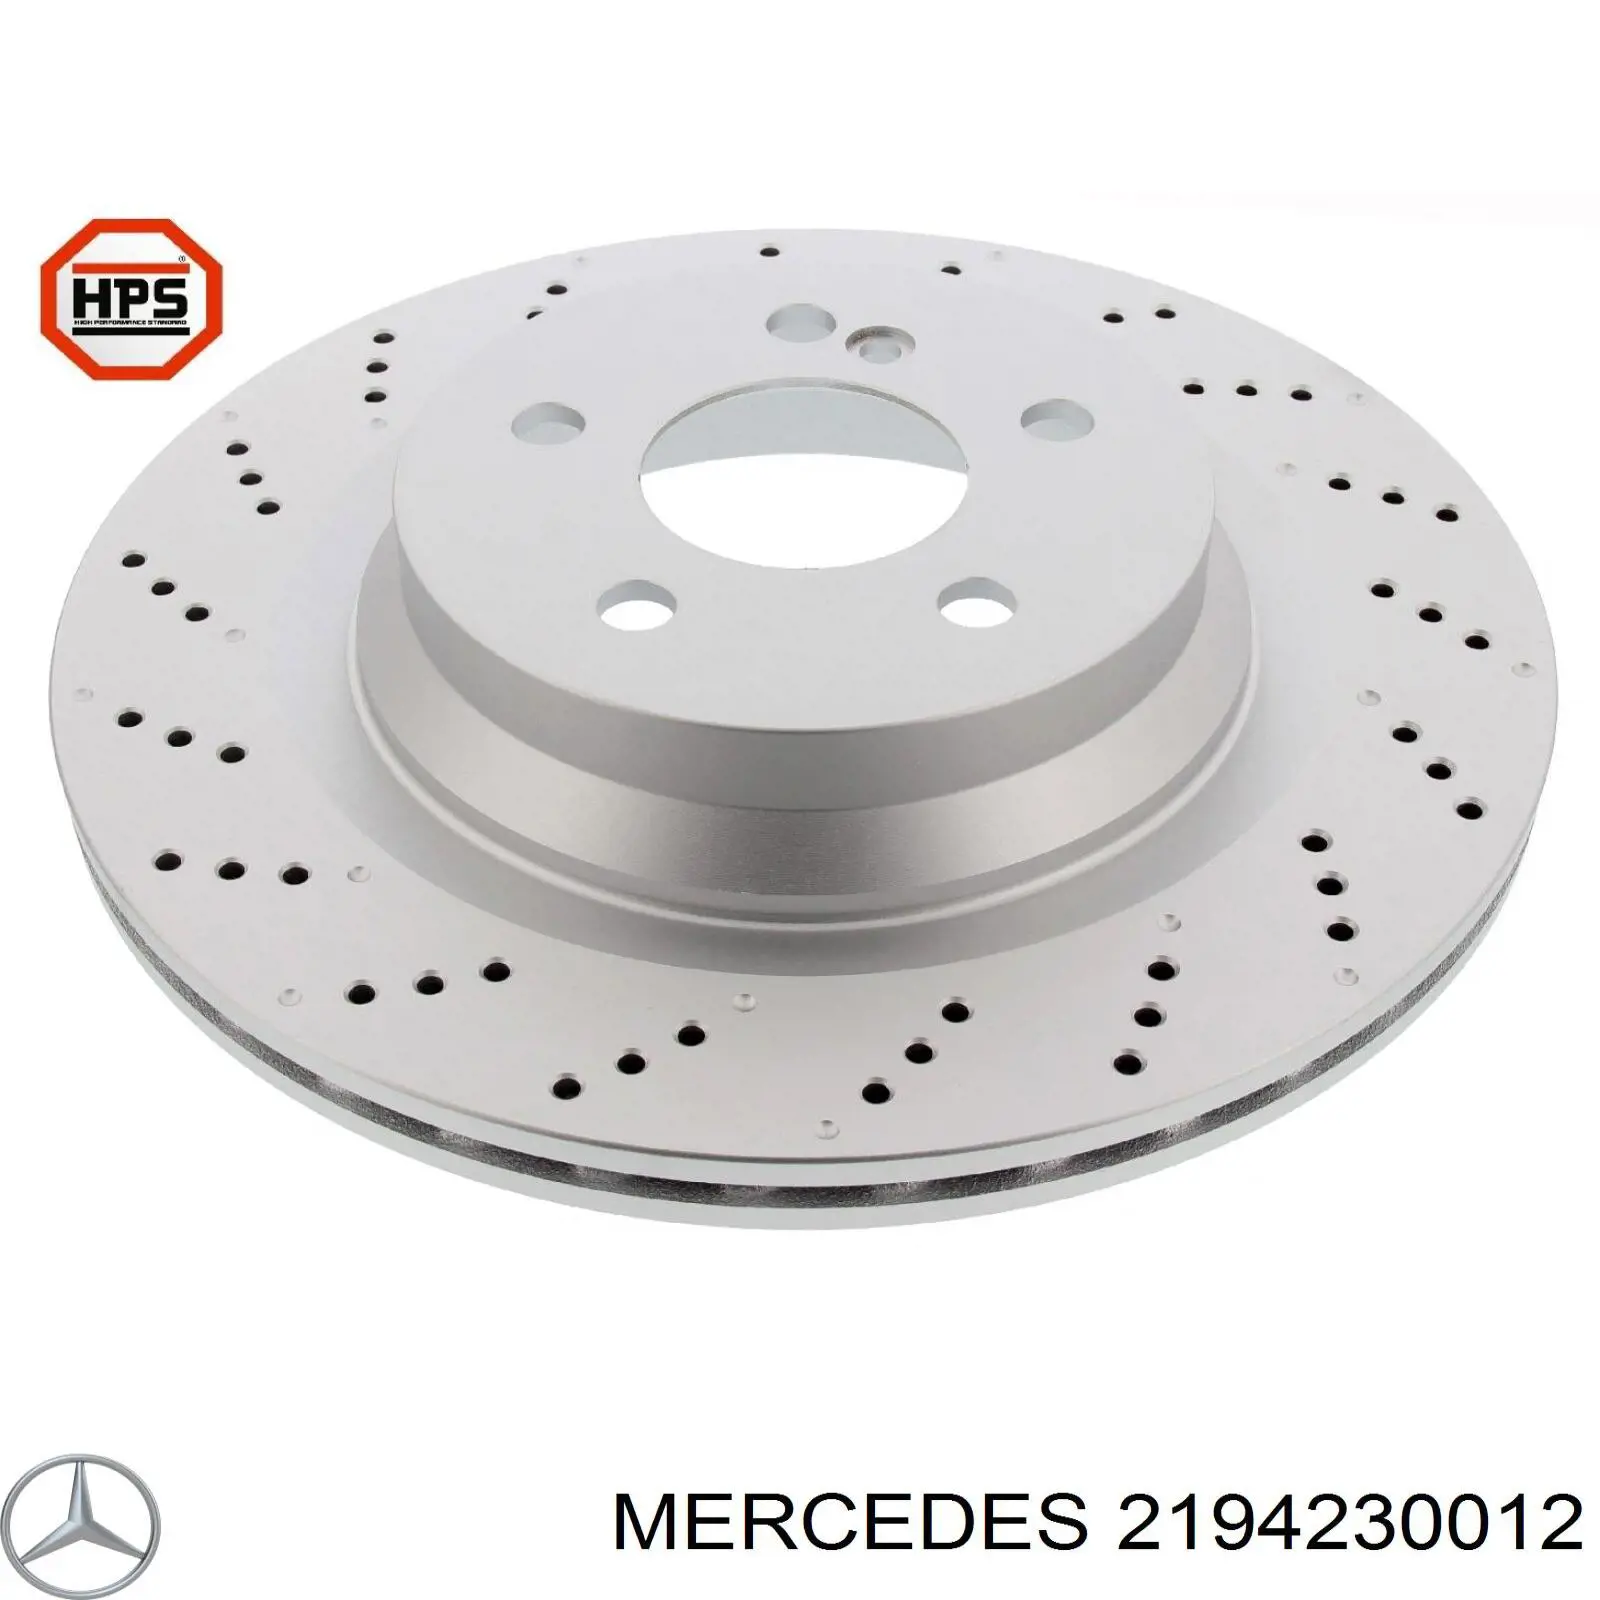 2194230012 Mercedes диск тормозной задний